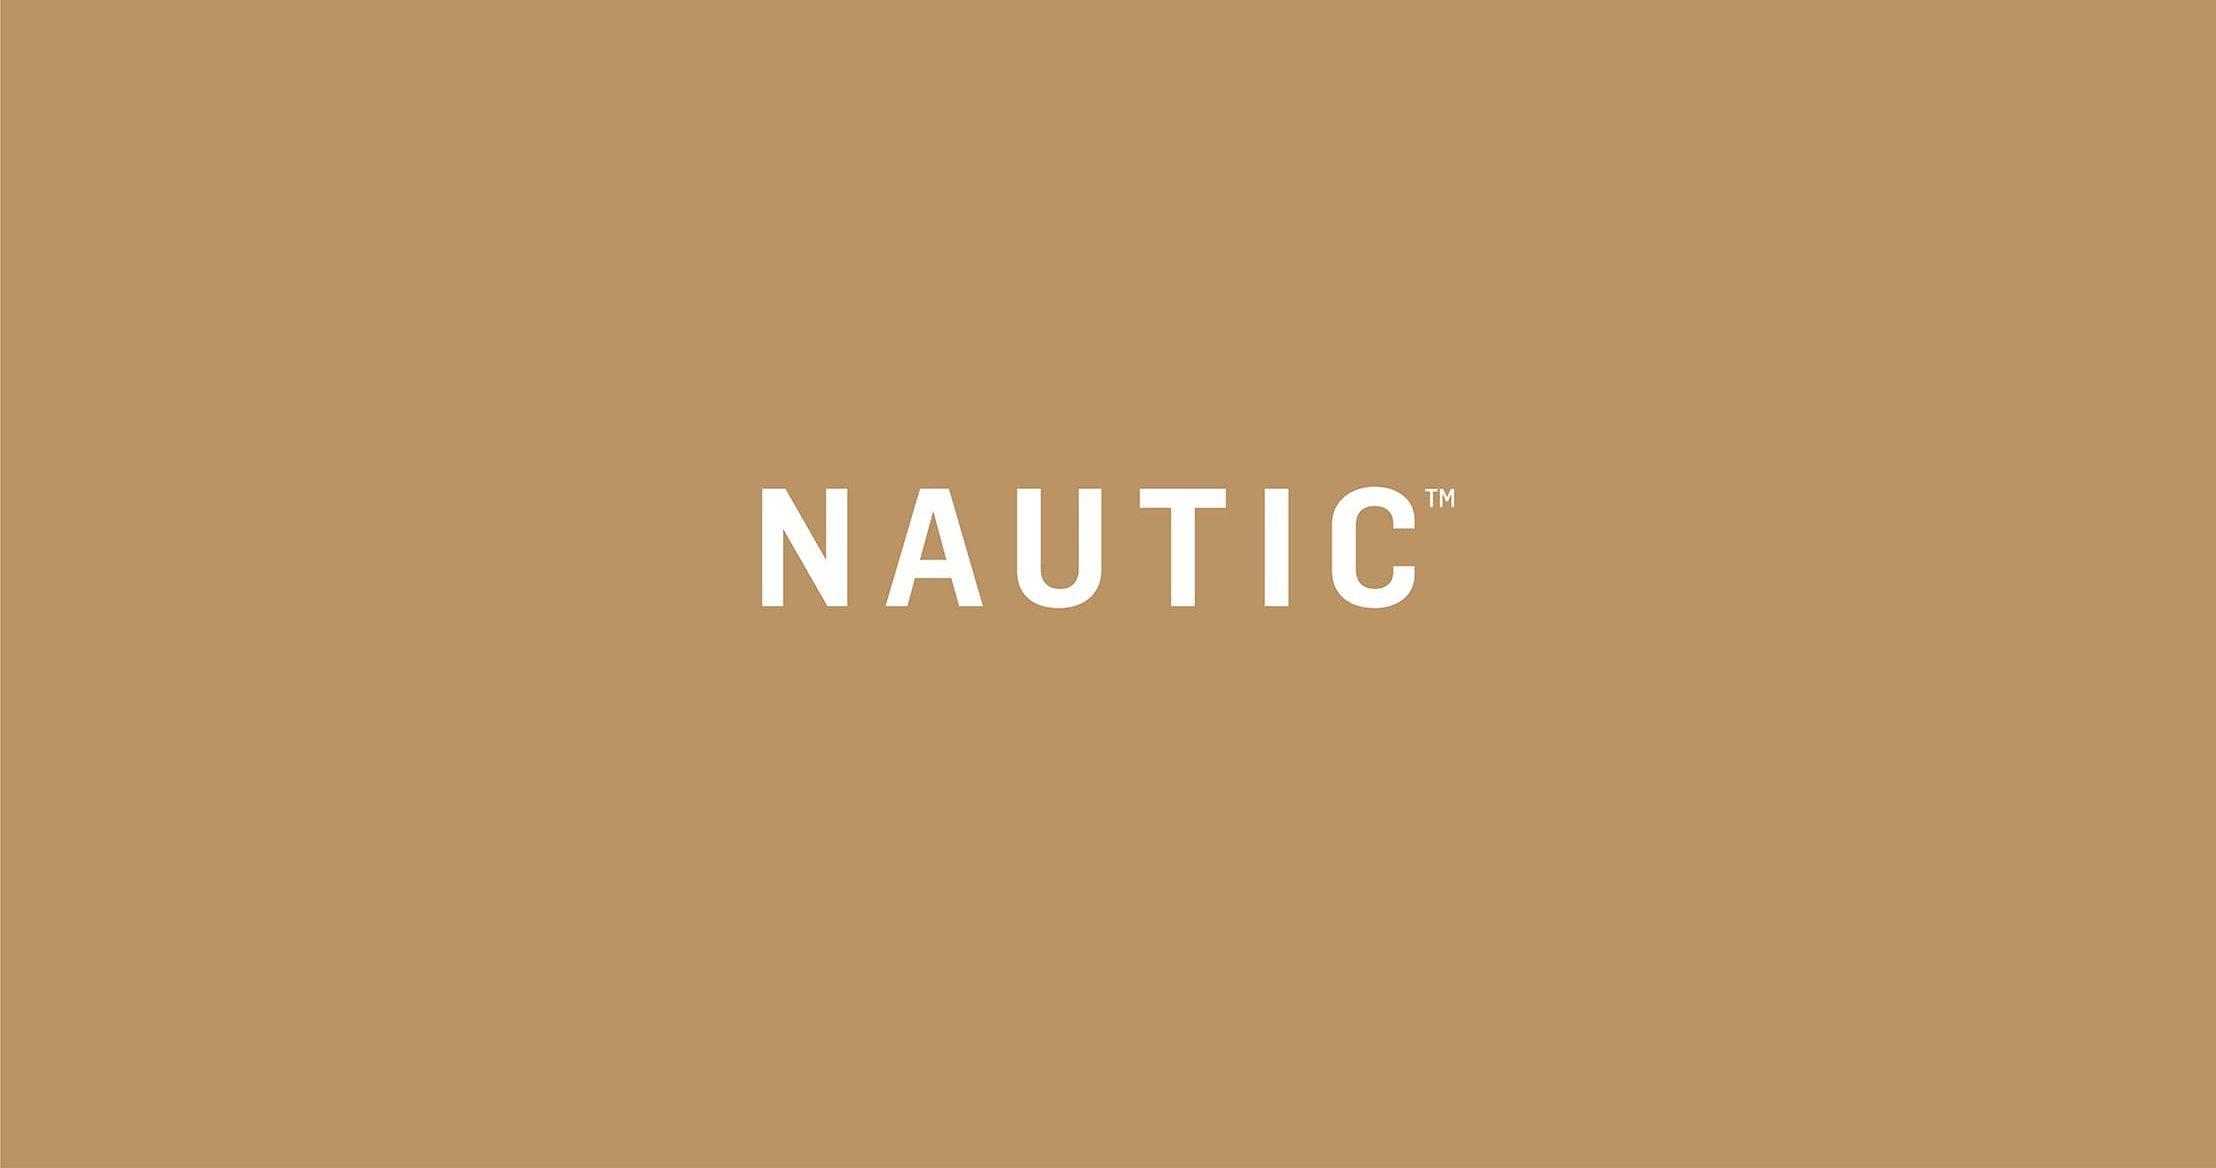 Nautic Brand Identity